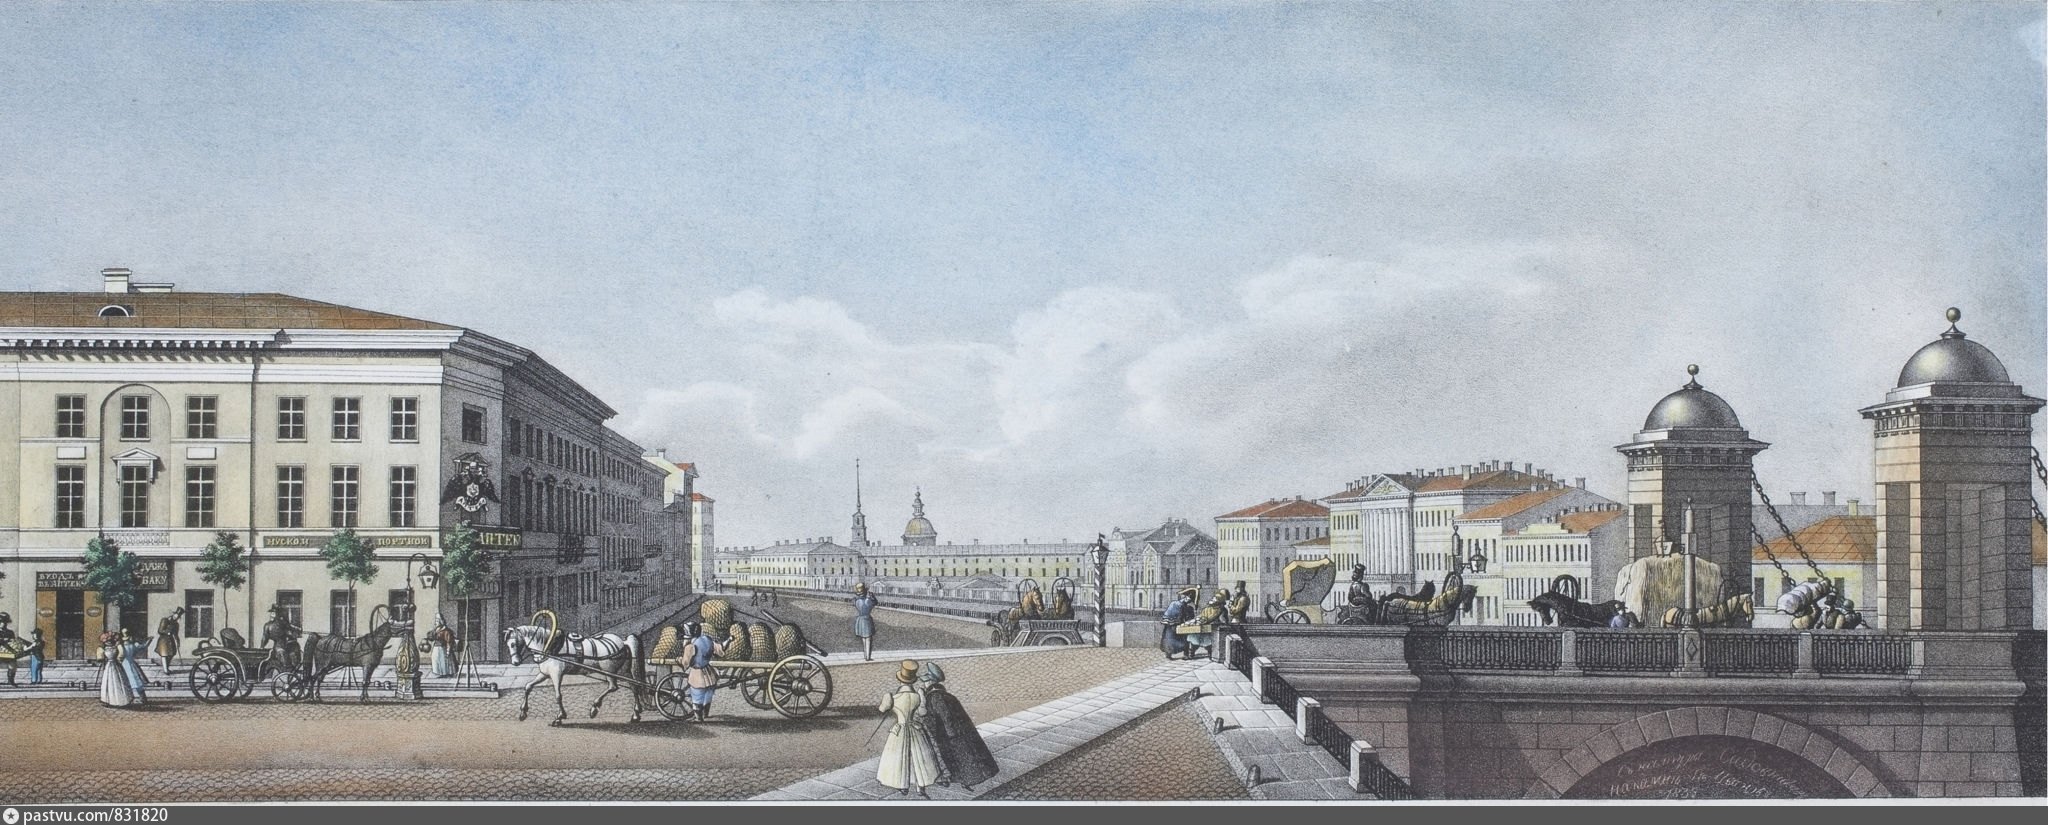 Невский проспект Аничков мост 19 век